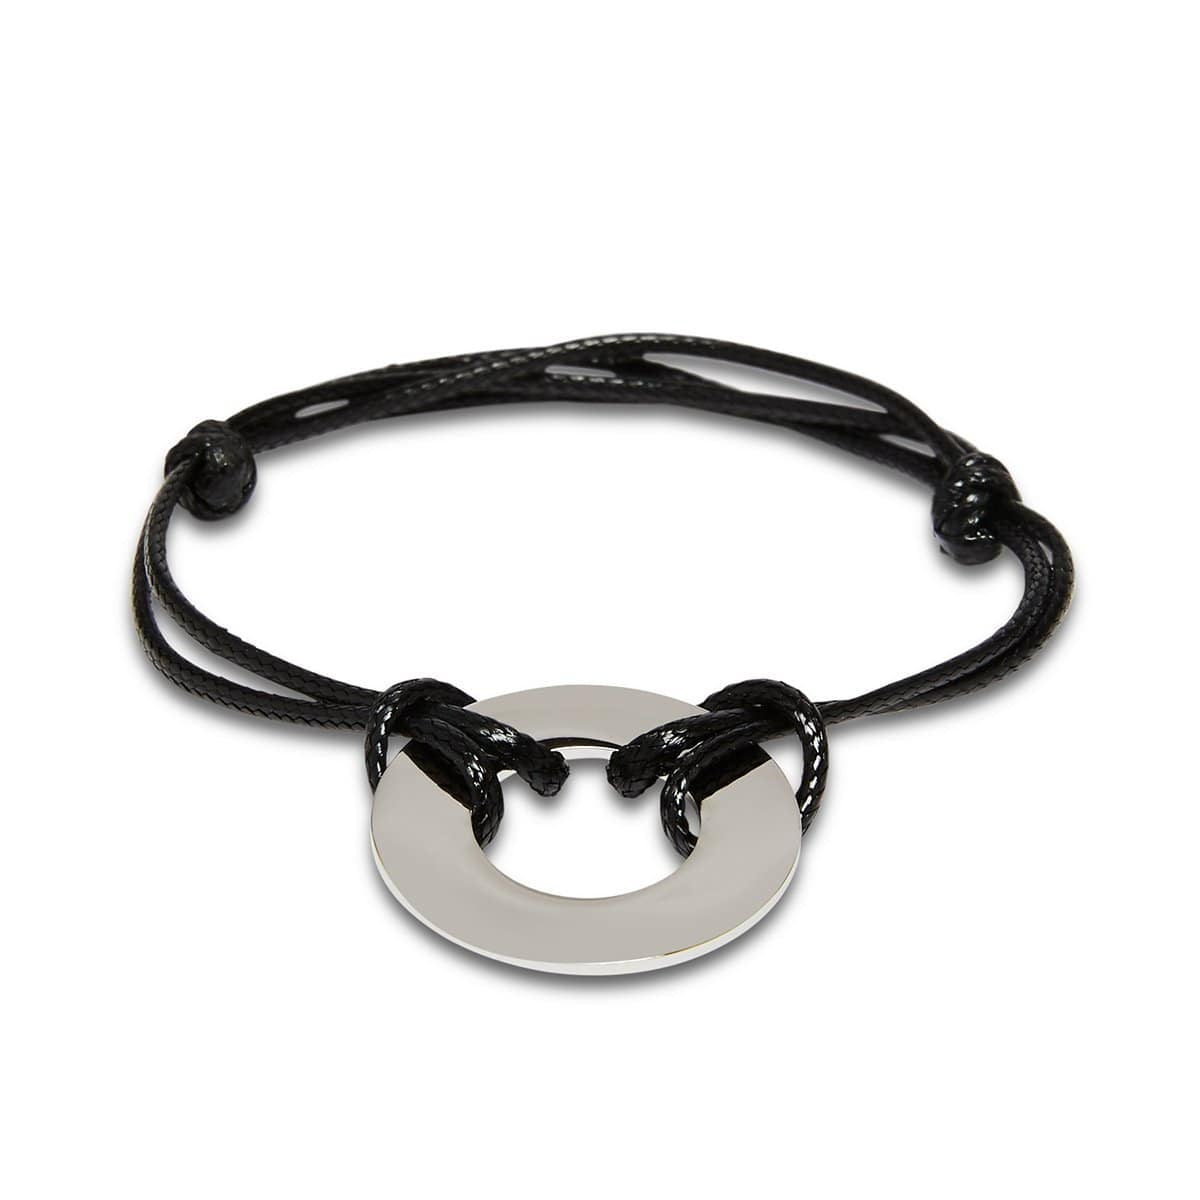 Adjustable Leather Washer Bracelet